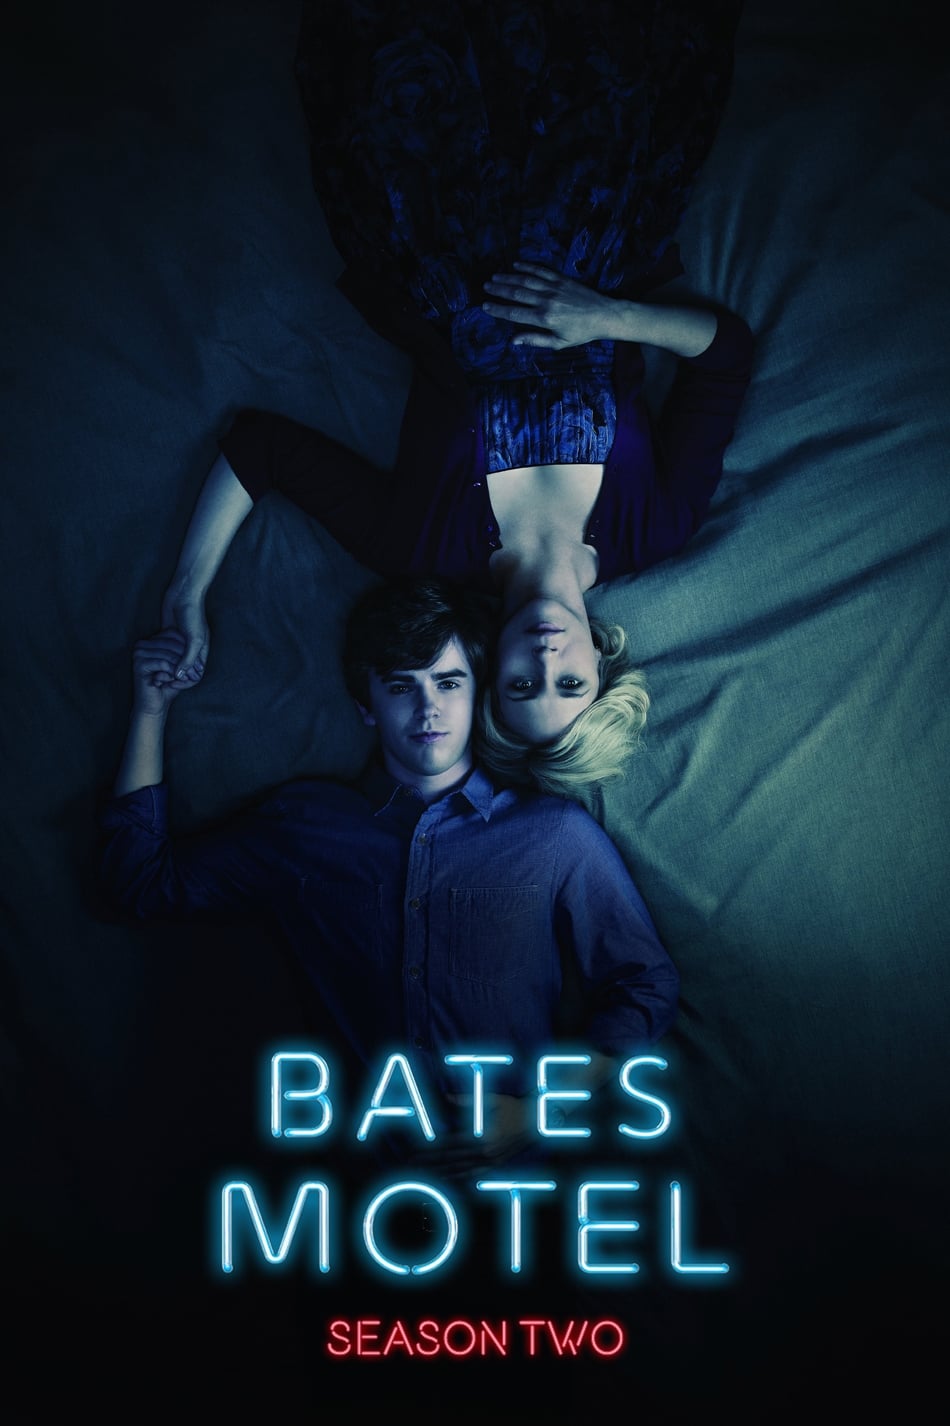 ดูหนังออนไลน์ Bates Motel (2014) Season 2 ซับไทย EP 4 เบส โมเทล ปี2 ตอนที่4 (ซับไทย)